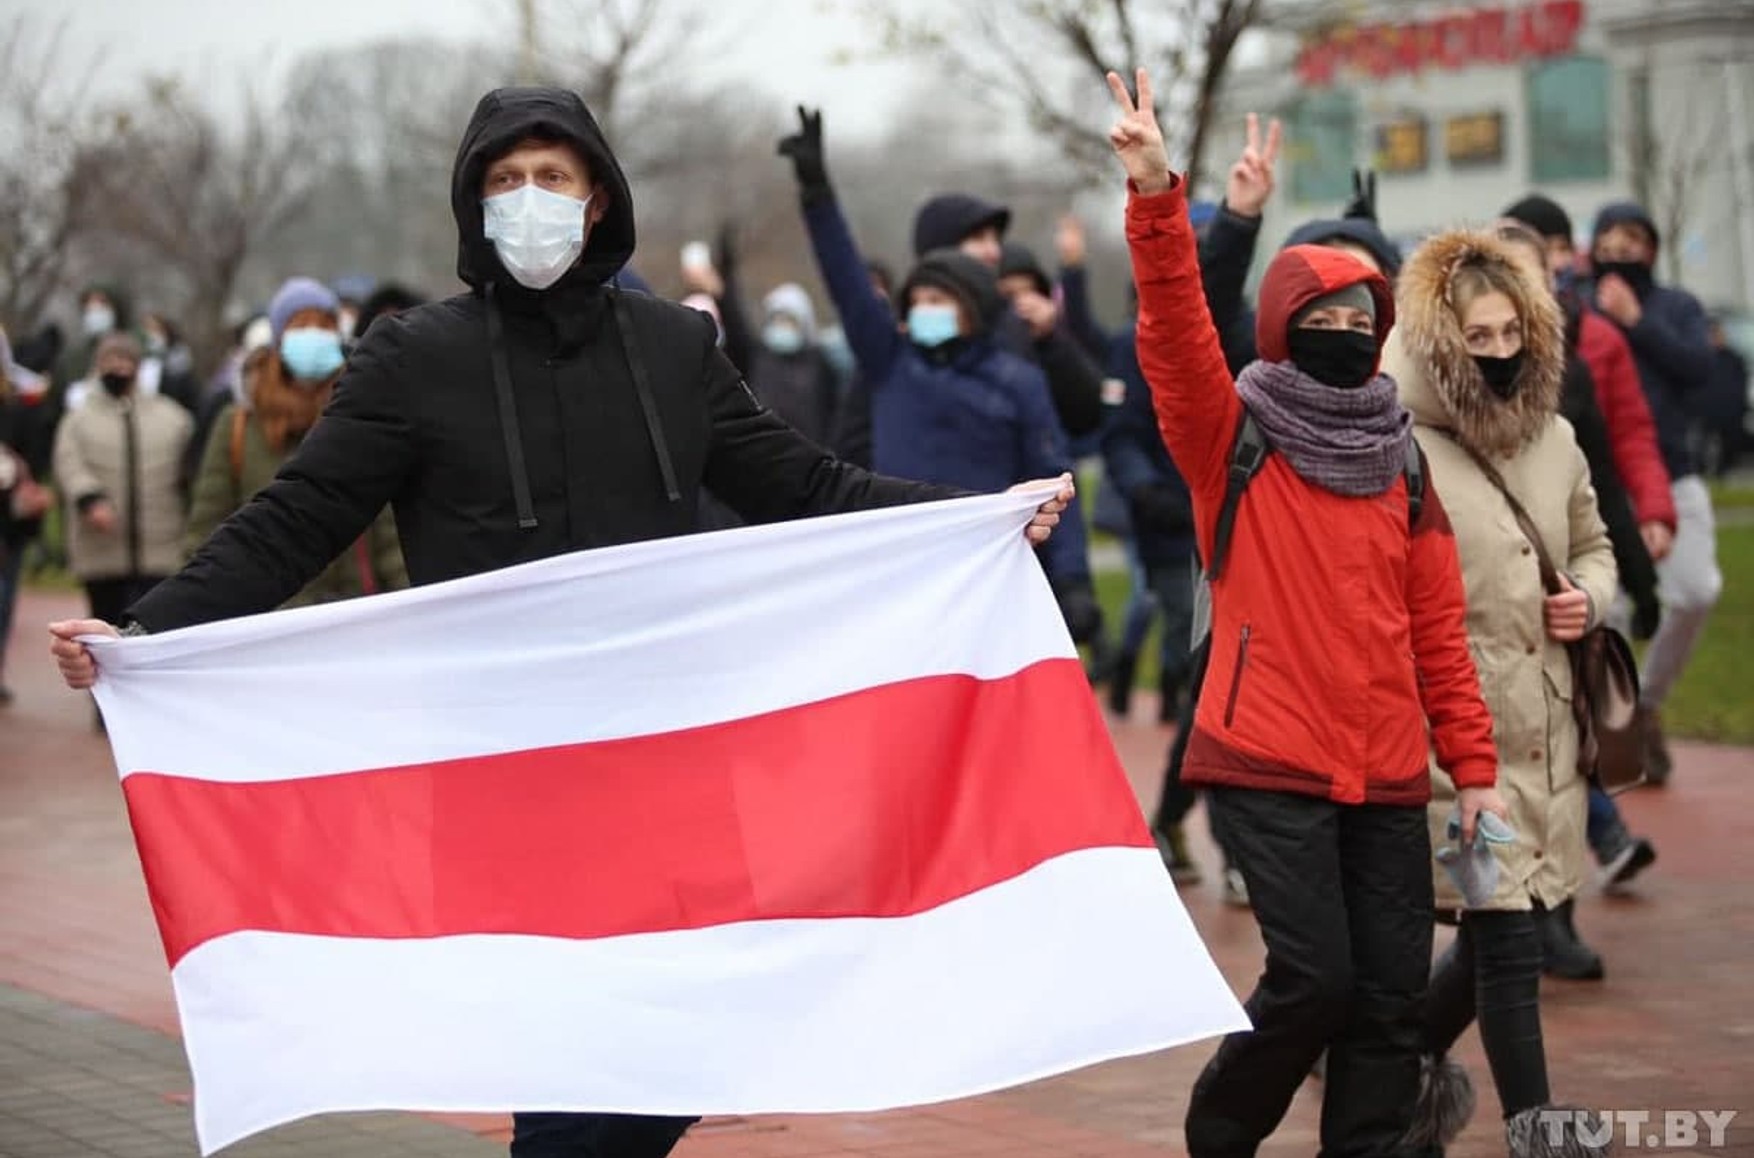 Білоруська міліція повідомила про затримання понад 200 учасників протесту. У списку центру «Весна» більш 269 чоловік